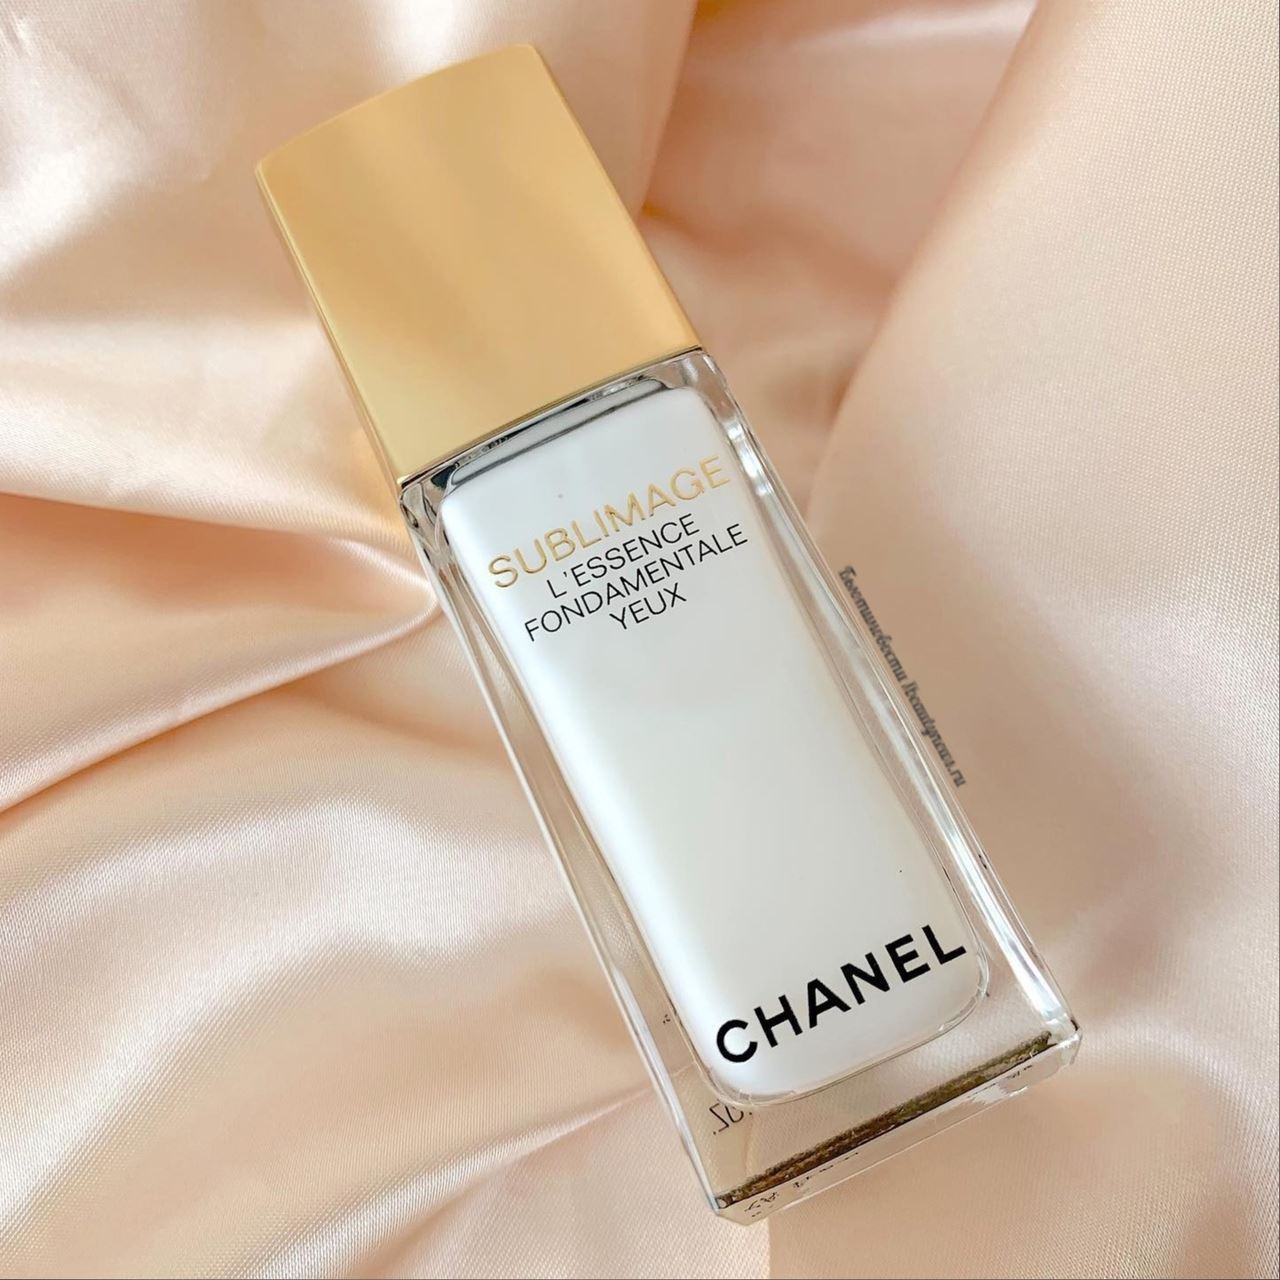 Chanel Sublimage L'Essence Fondamentale Yeux 2022